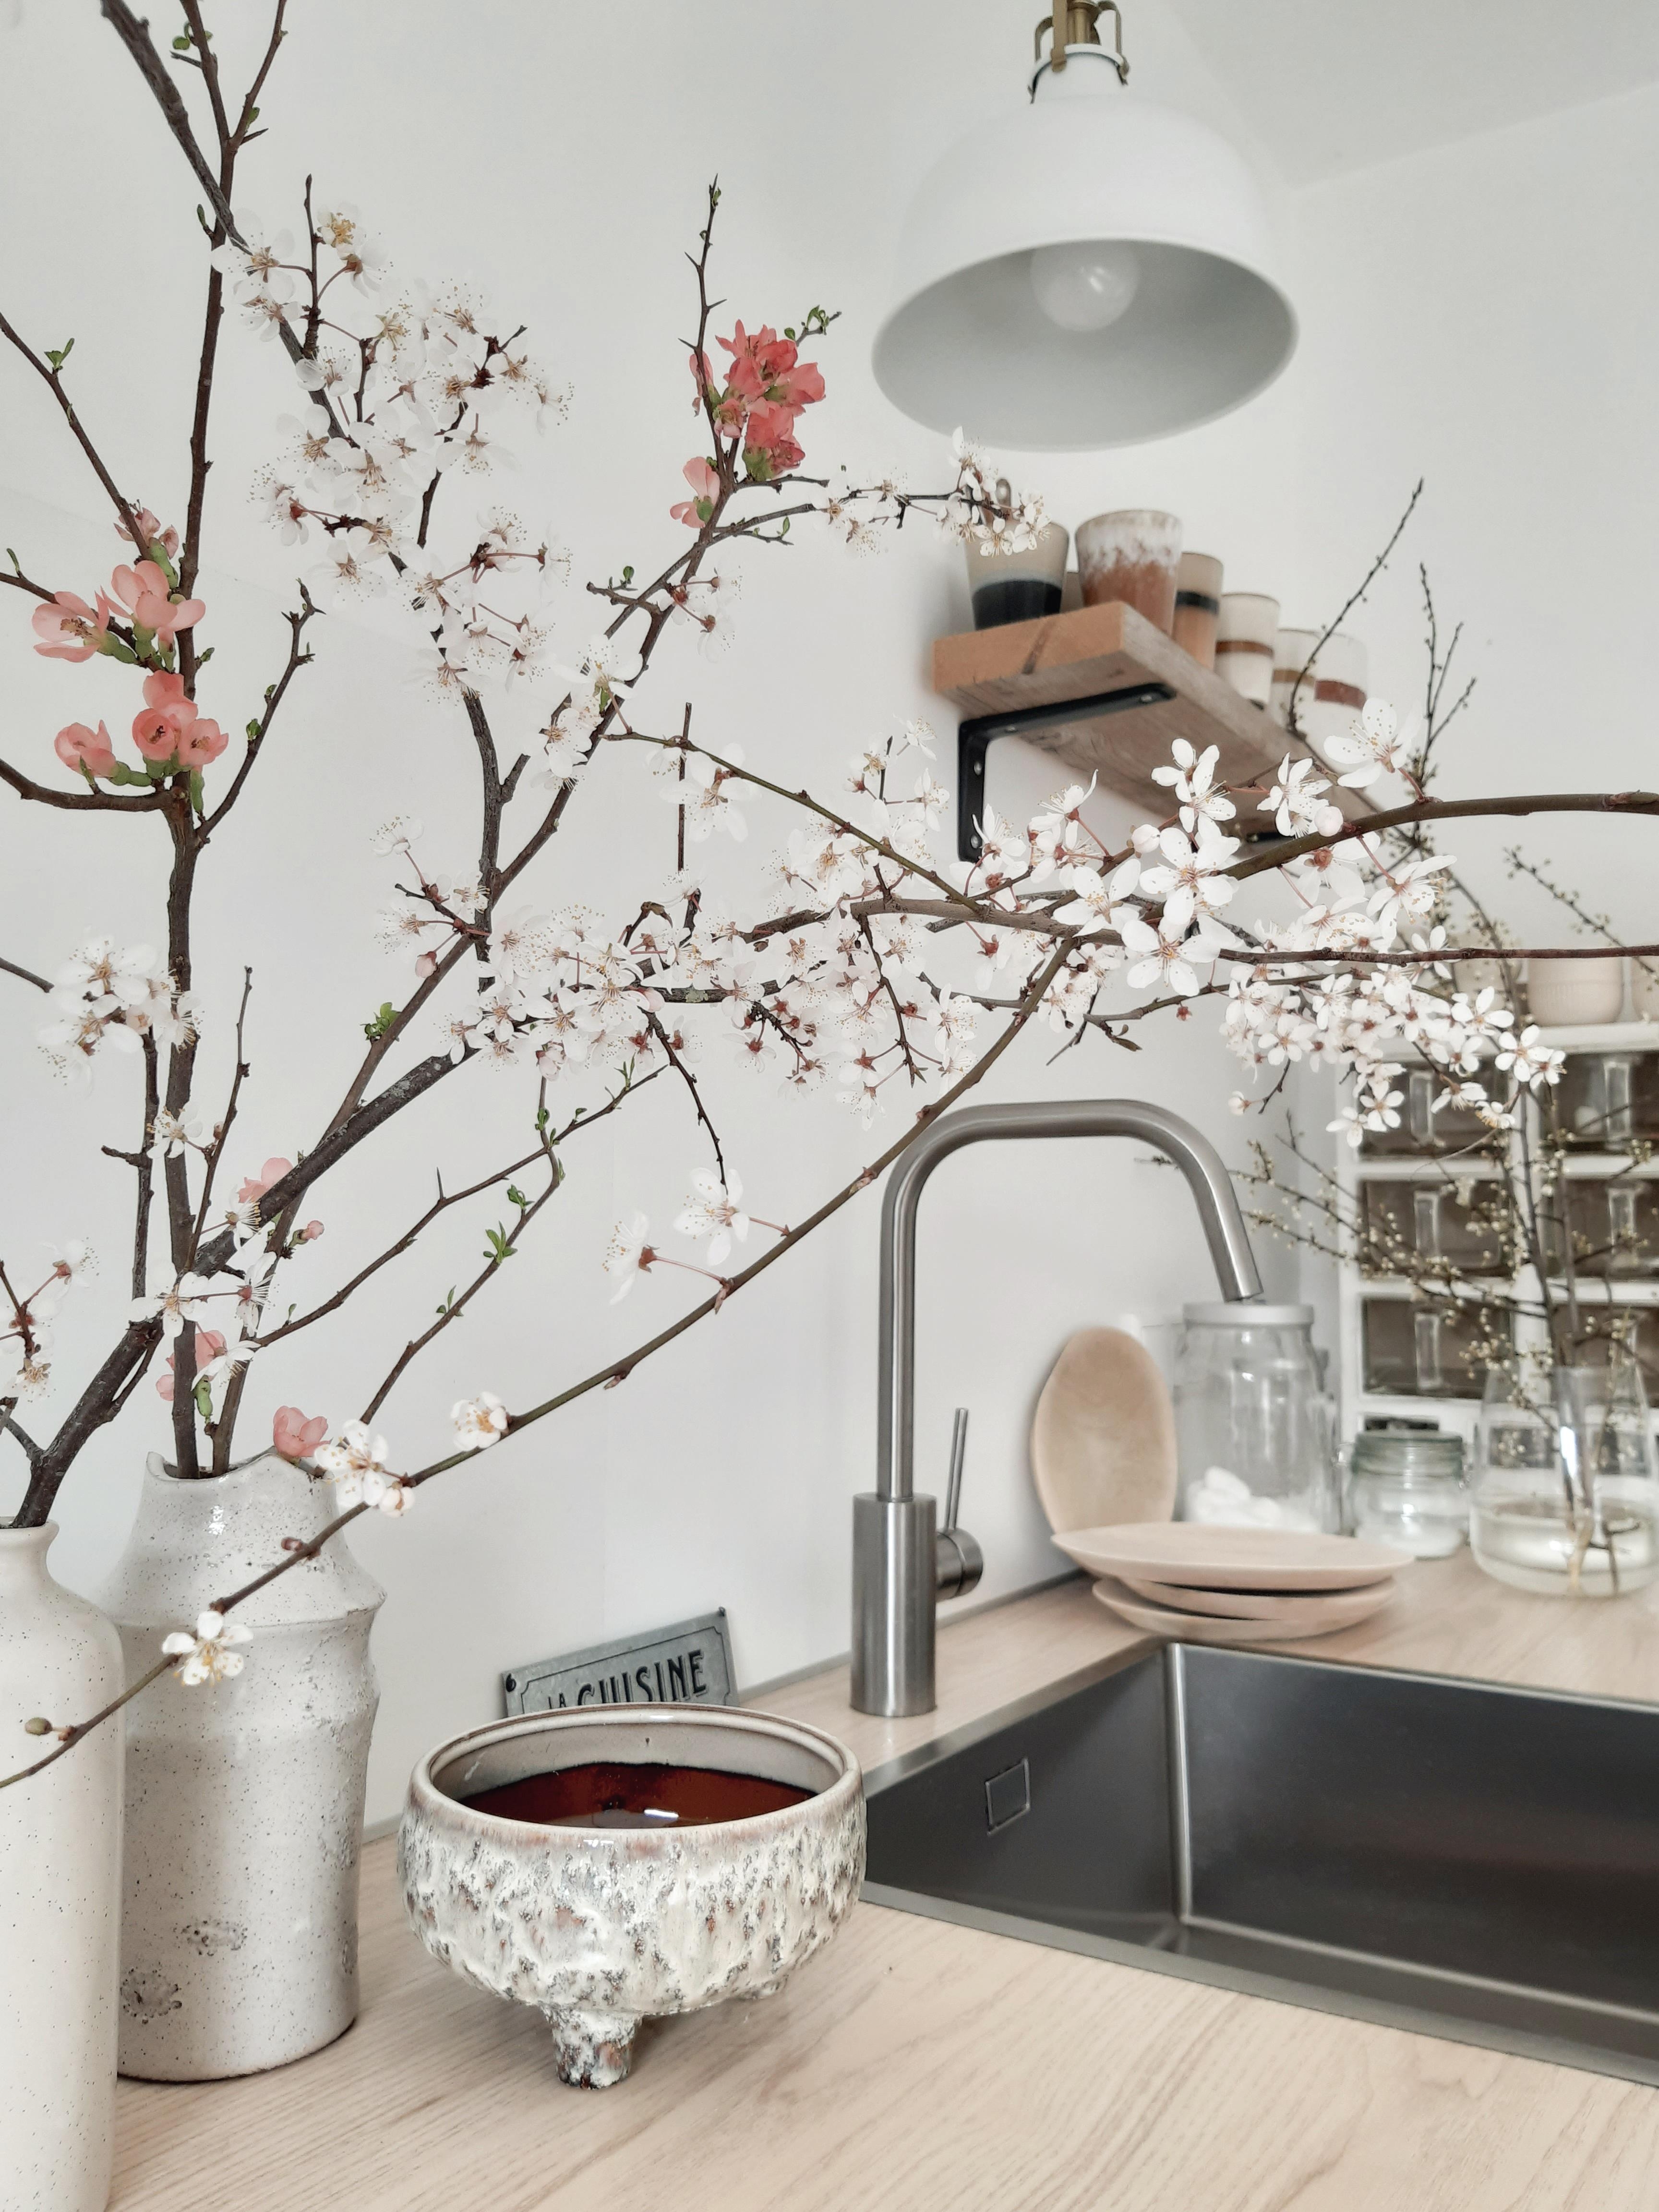 #küche #küchendetails #zweige #blumen #couchstyle #interior #weisseküche #flowers #freshflower #ceramics 